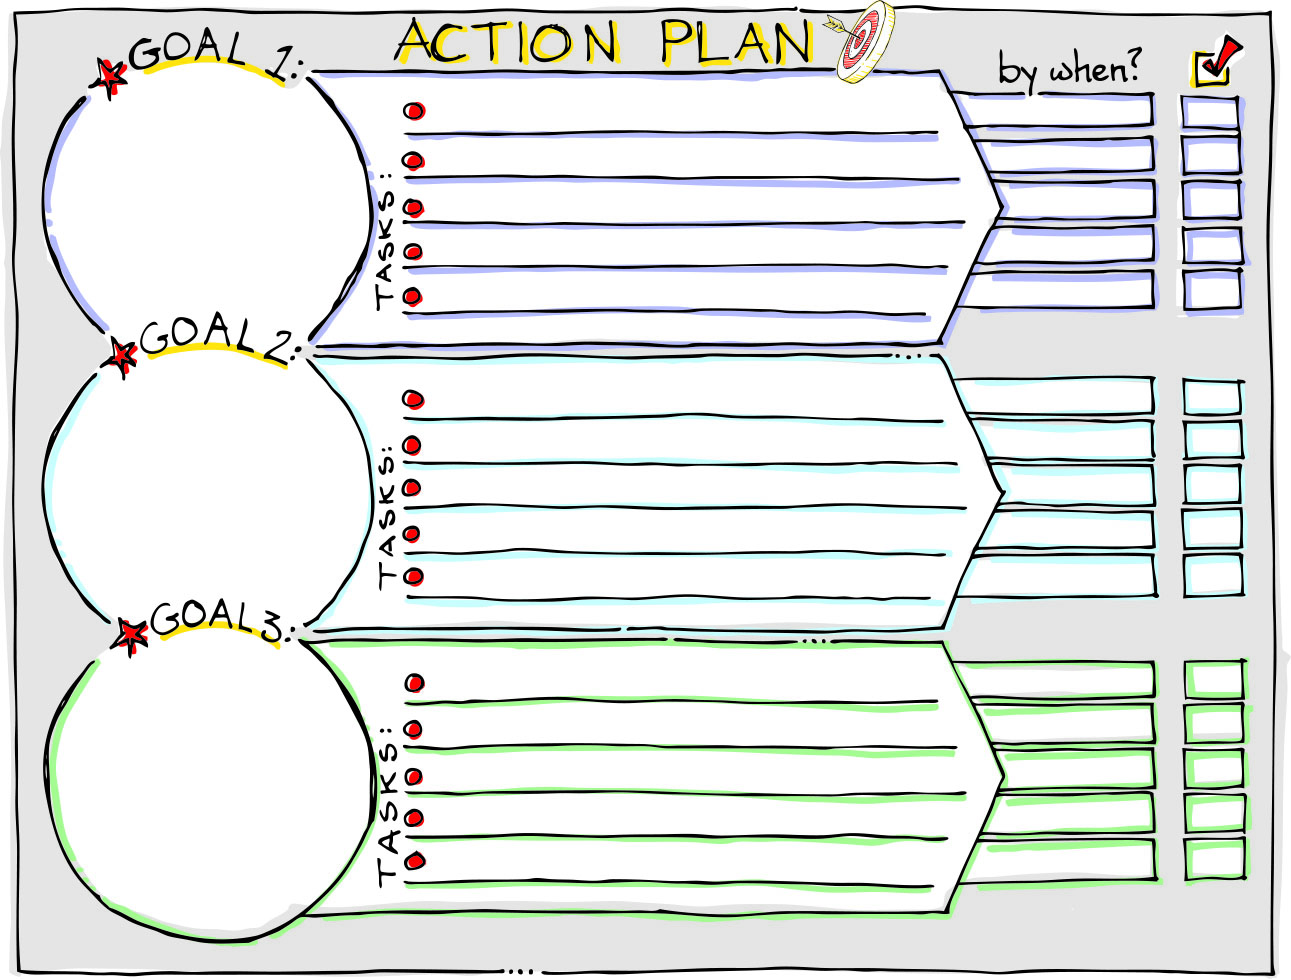 Action Plan.jpg